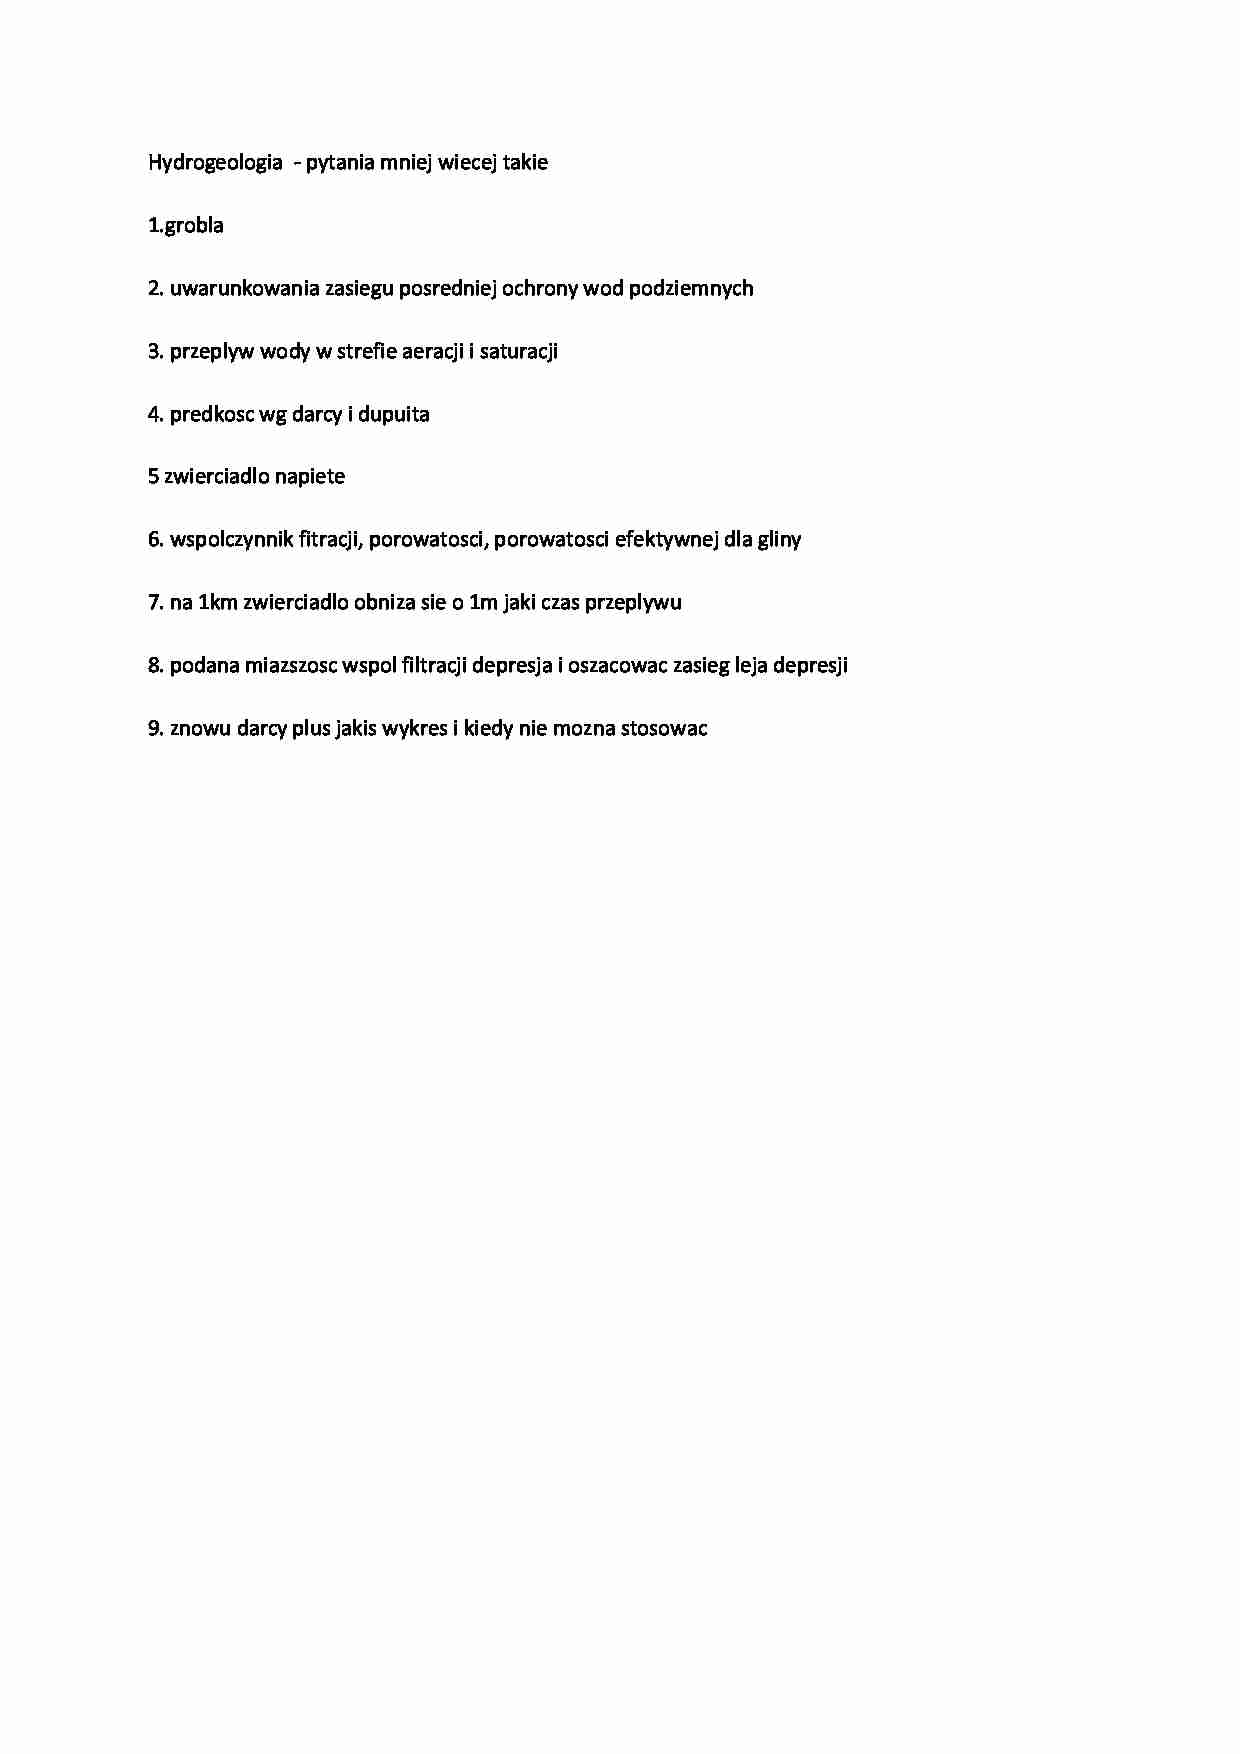 Pytania z egzaminu  - strona 1